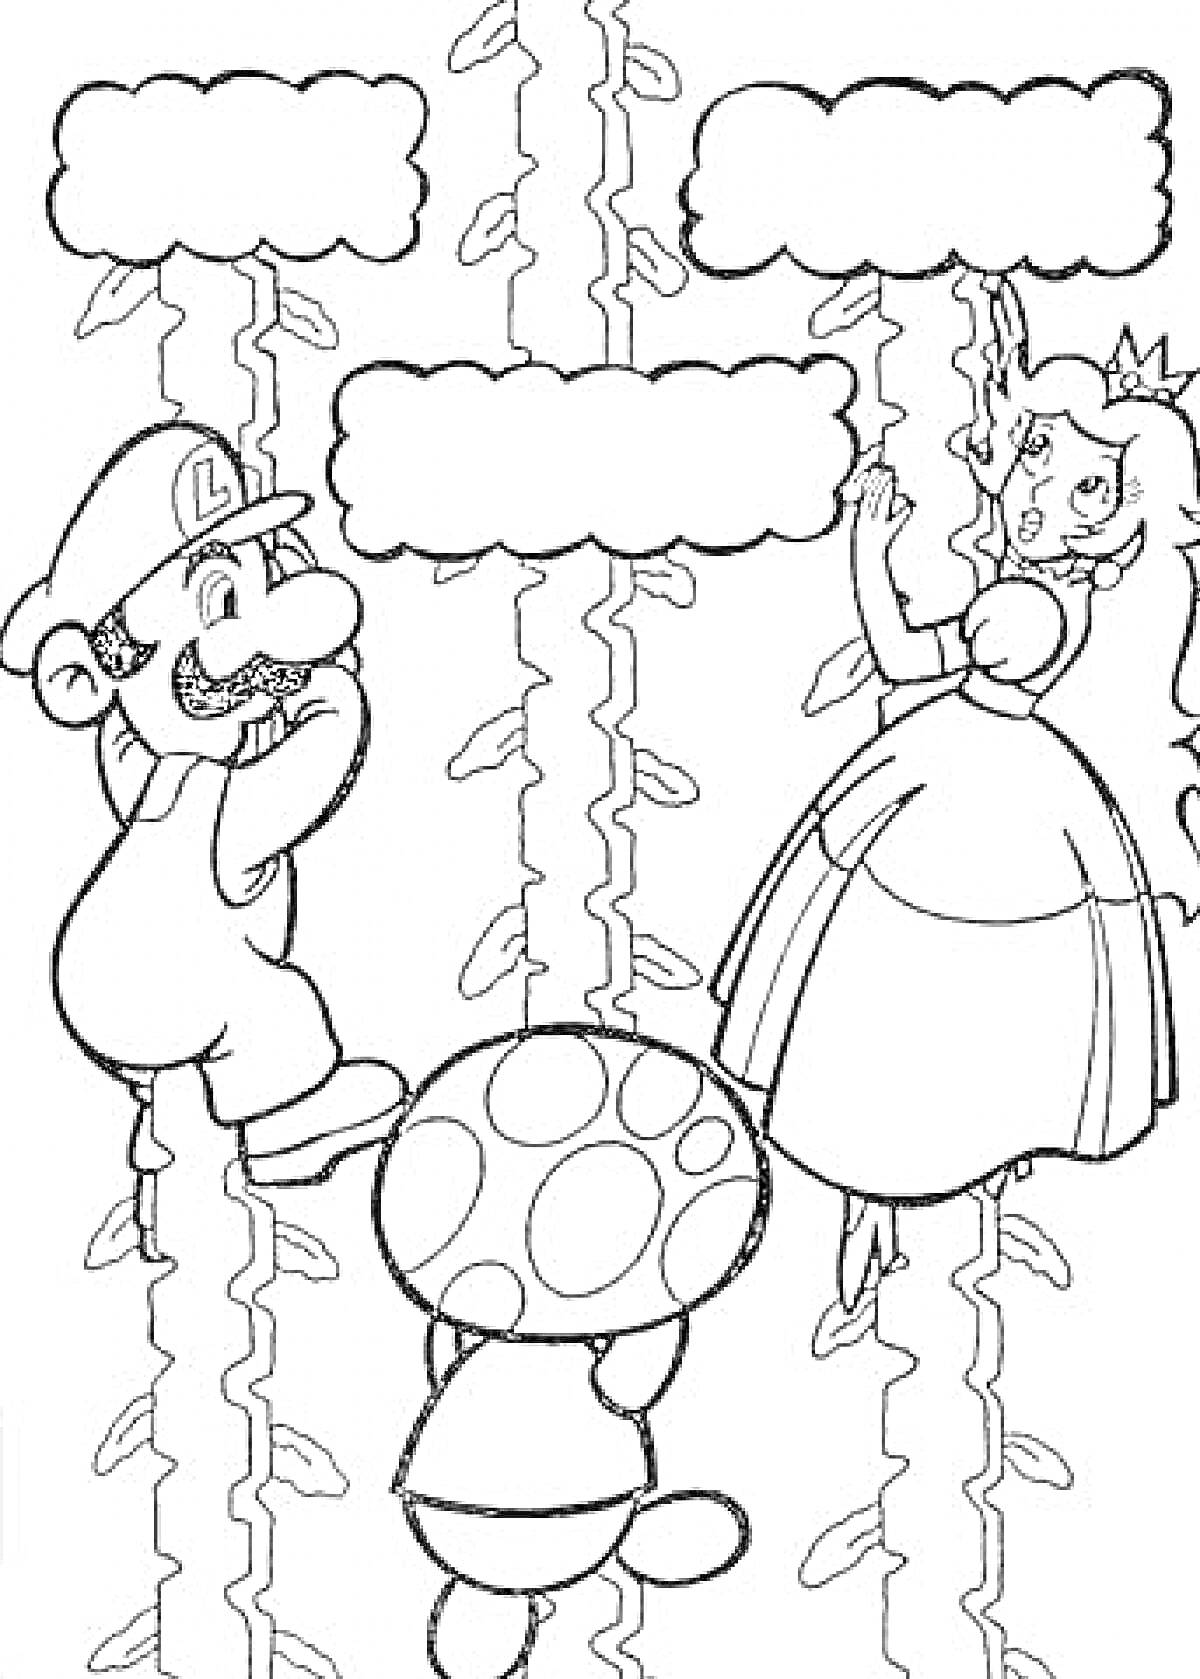 Раскраска Марио, принцесса Пич и Тоад на гигантских растениях с пустыми речевыми пузырями